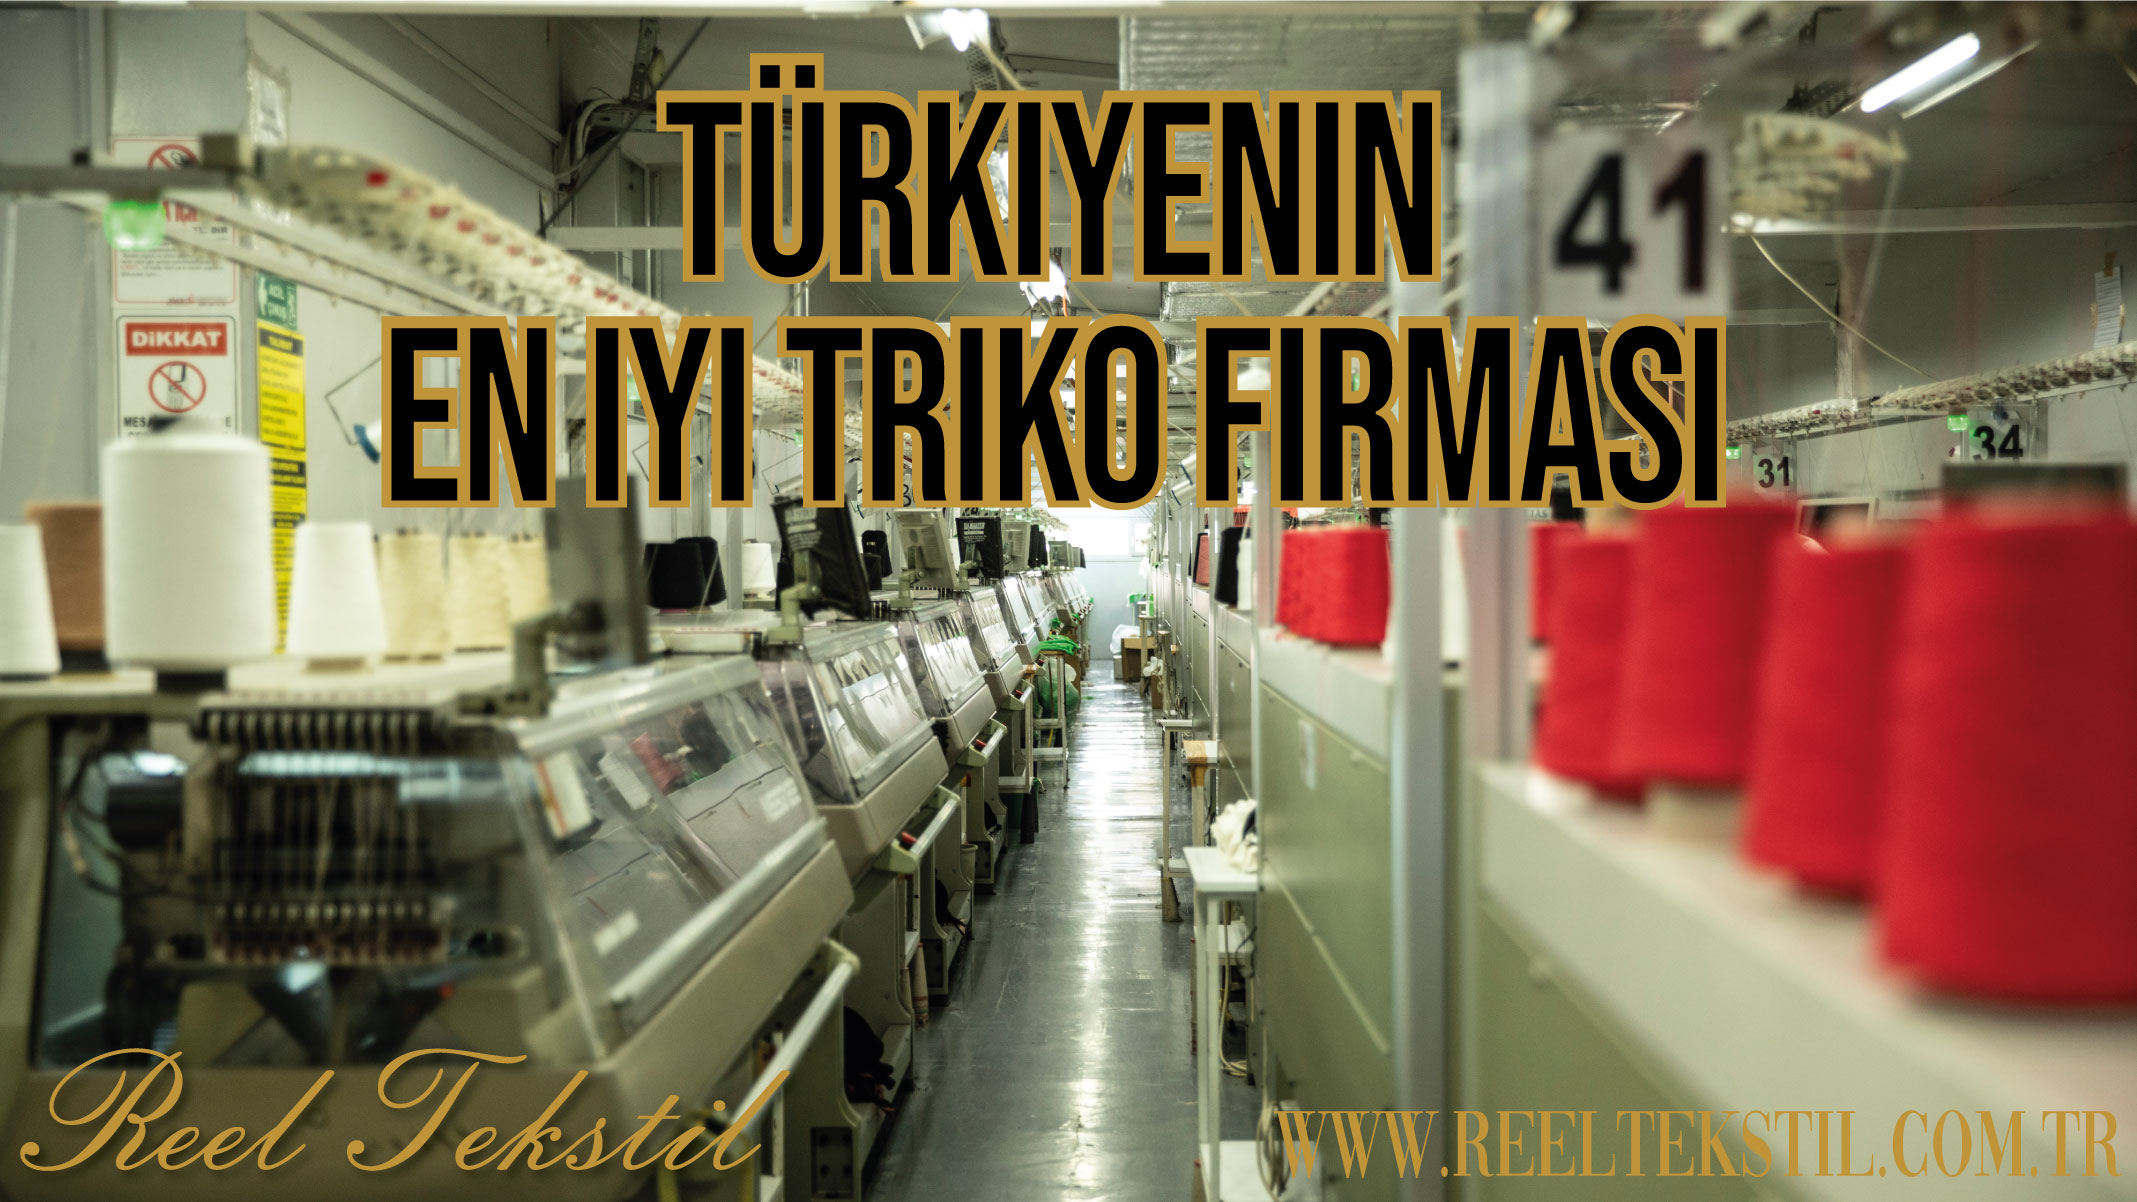 Turkey's Best Knitwear Company